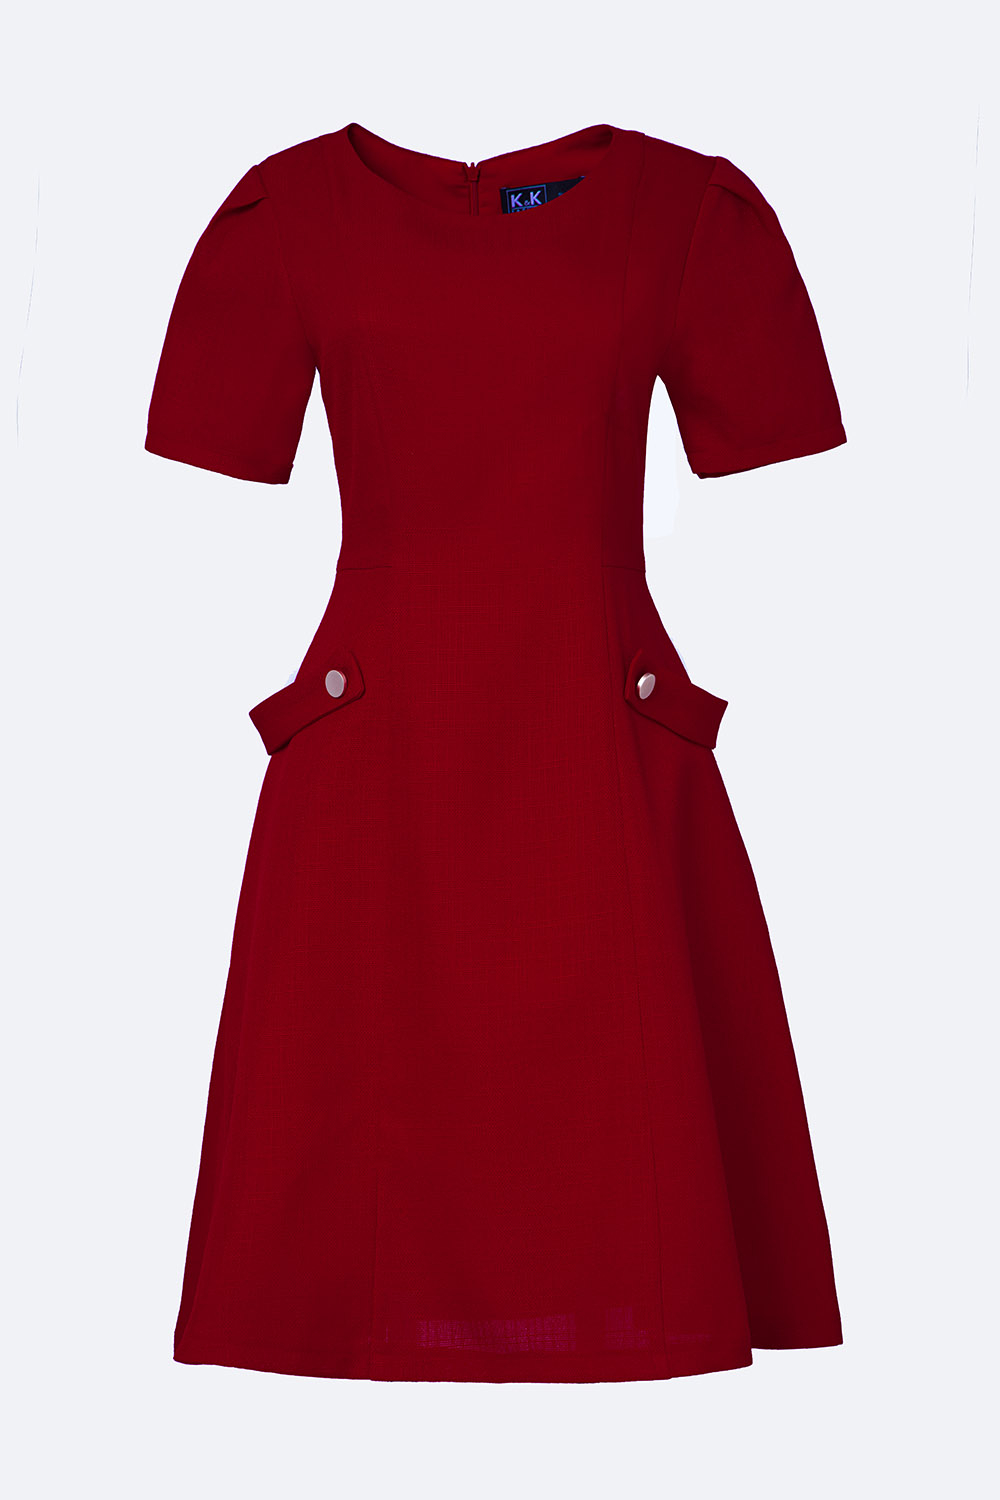 Vintage Hấp Dẫn Phụ Nữ Mặc Váy Đỏ Và Mũ Nồi Đen Với Vali Trên Nền